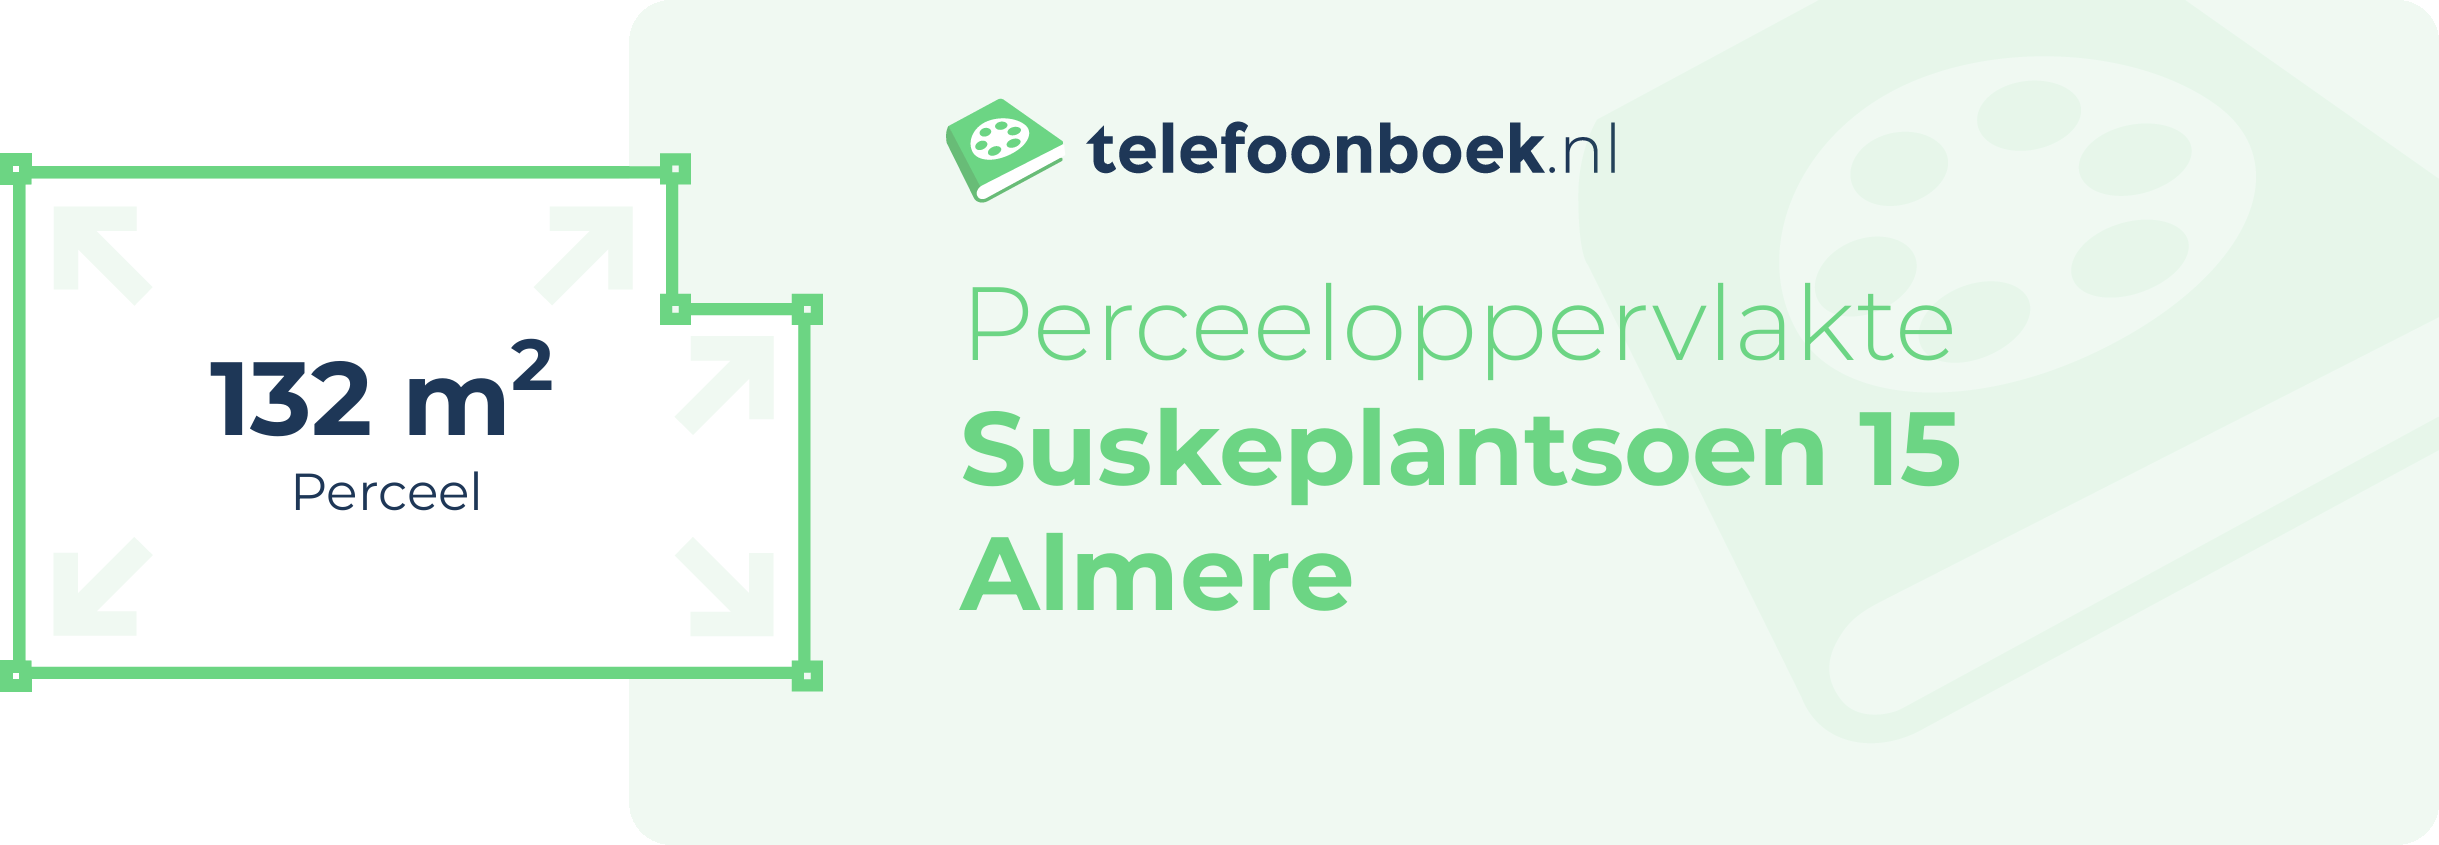 Perceeloppervlakte Suskeplantsoen 15 Almere